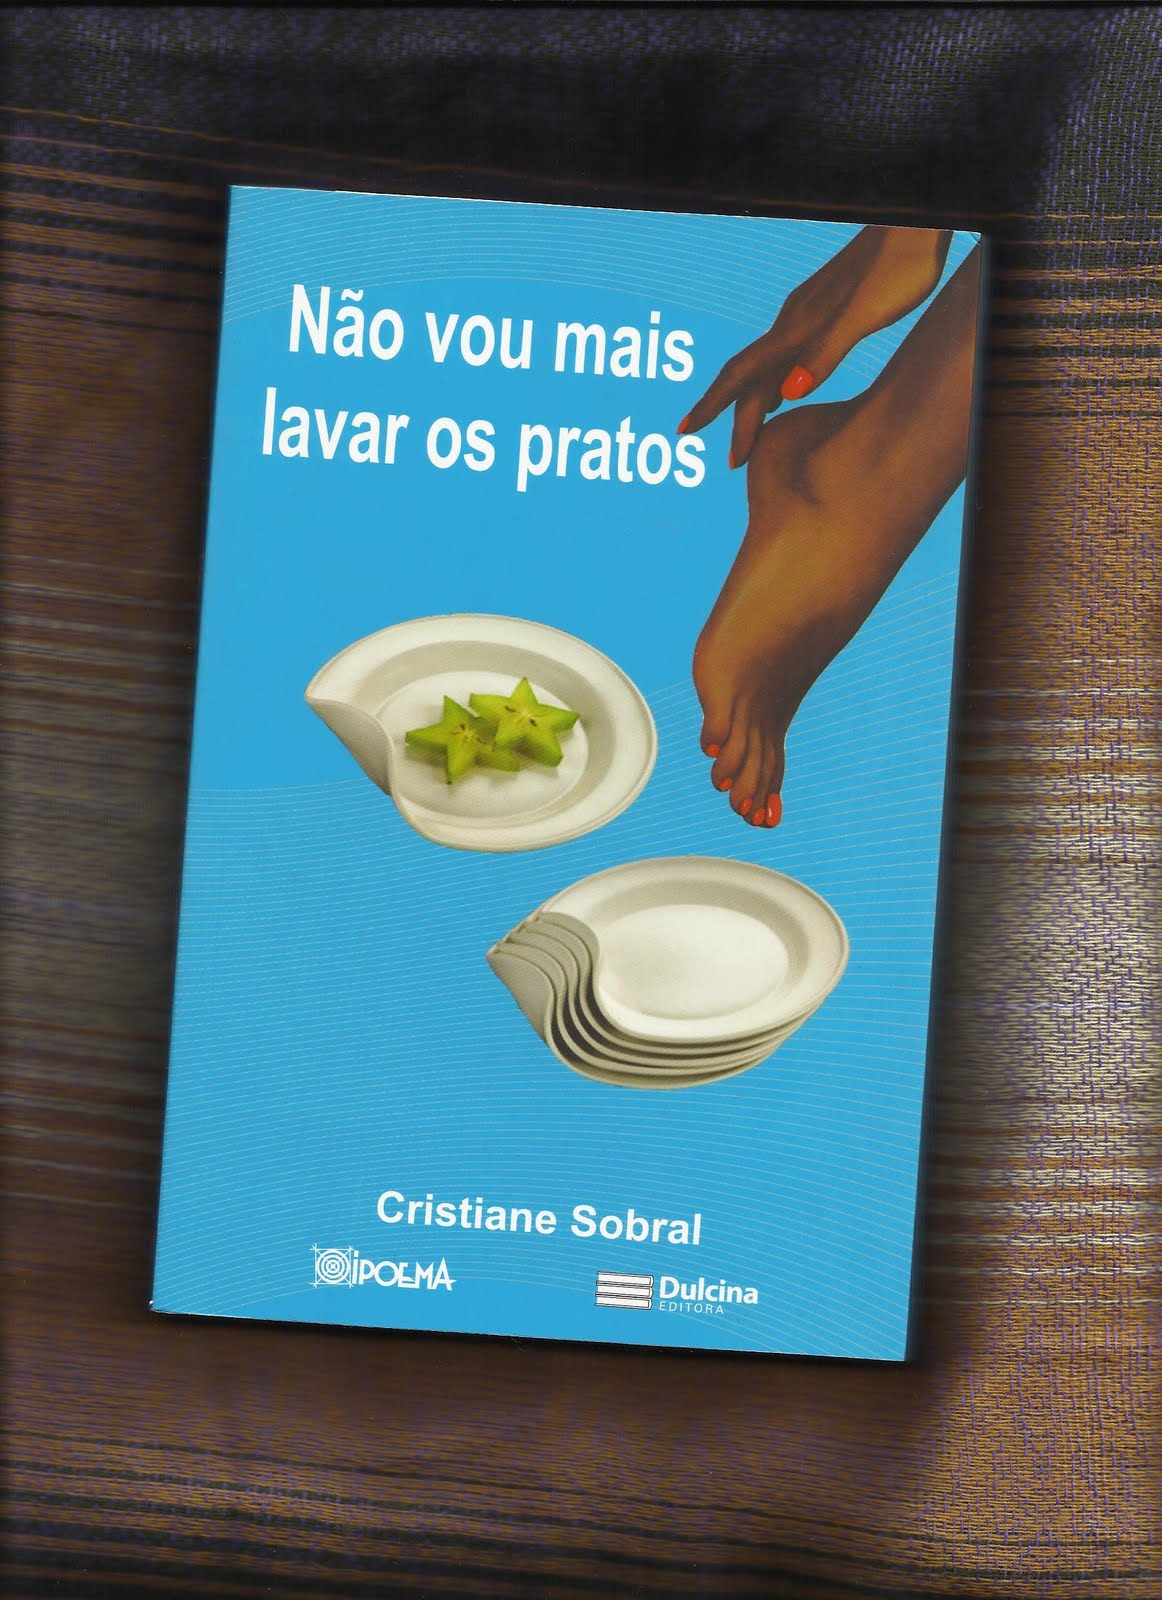 desistir  Dicionário Infopédia da Língua Portuguesa